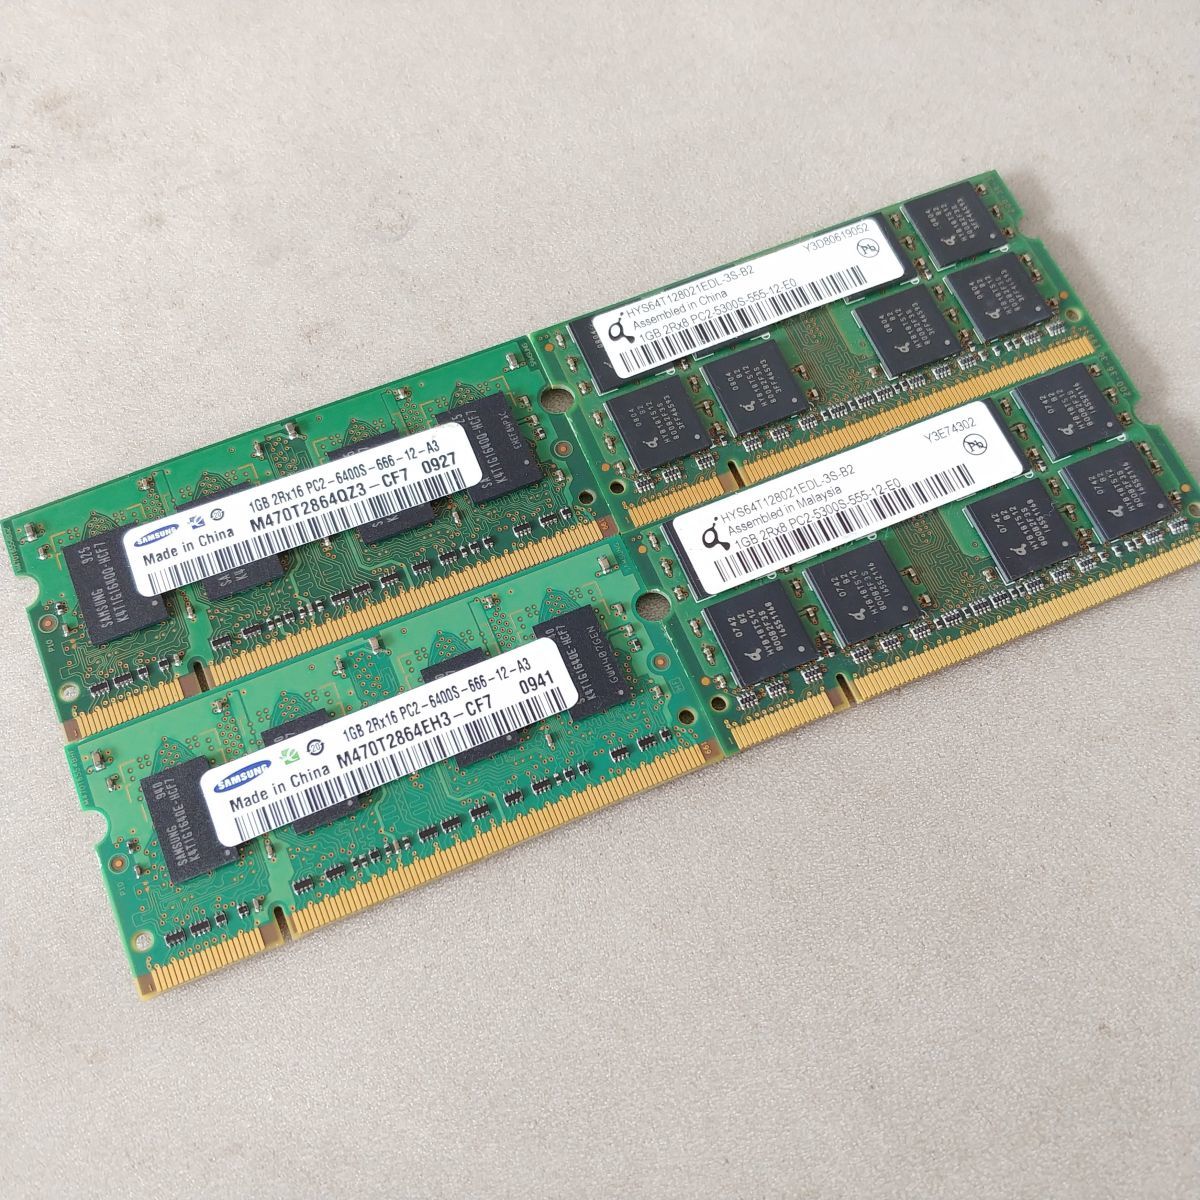 【☆1円スタート☆】SAMSUNG サムスン hynix ハイニックス ノート PC メモリ DIMM DDR2 1GB 512MB 256MB 合計31枚 まとめ 金抽出 #577_画像2